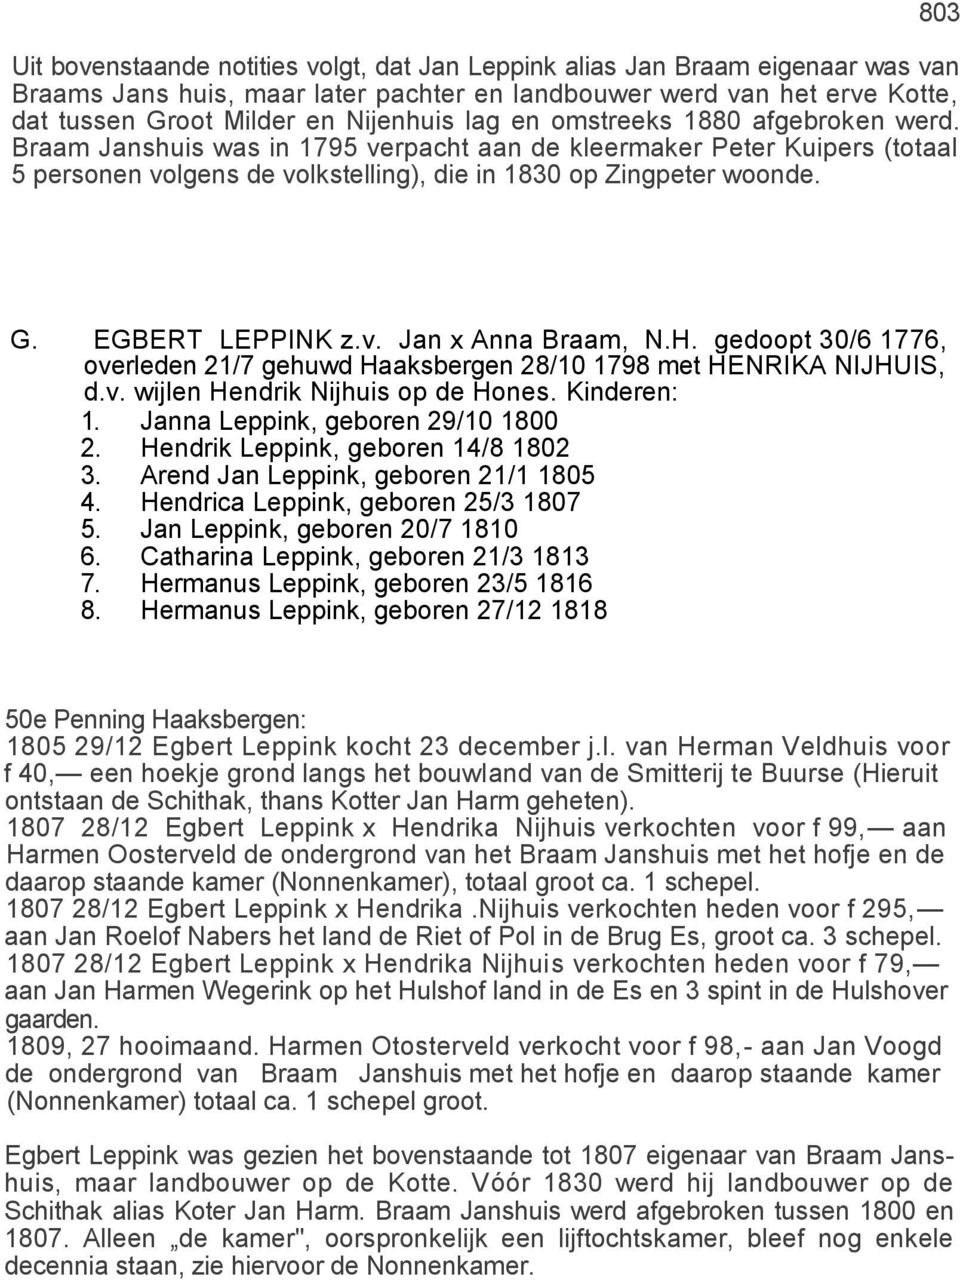 EGBERT LEPPINK z.v. Jan x Anna Braam, N.H. gedoopt 30/6 1776, overleden 21/7 gehuwd Haaksbergen 28/10 1798 met HENRIKA NIJHUIS, d.v. wijlen Hendrik Nijhuis op de Hones. Kinderen: 1.